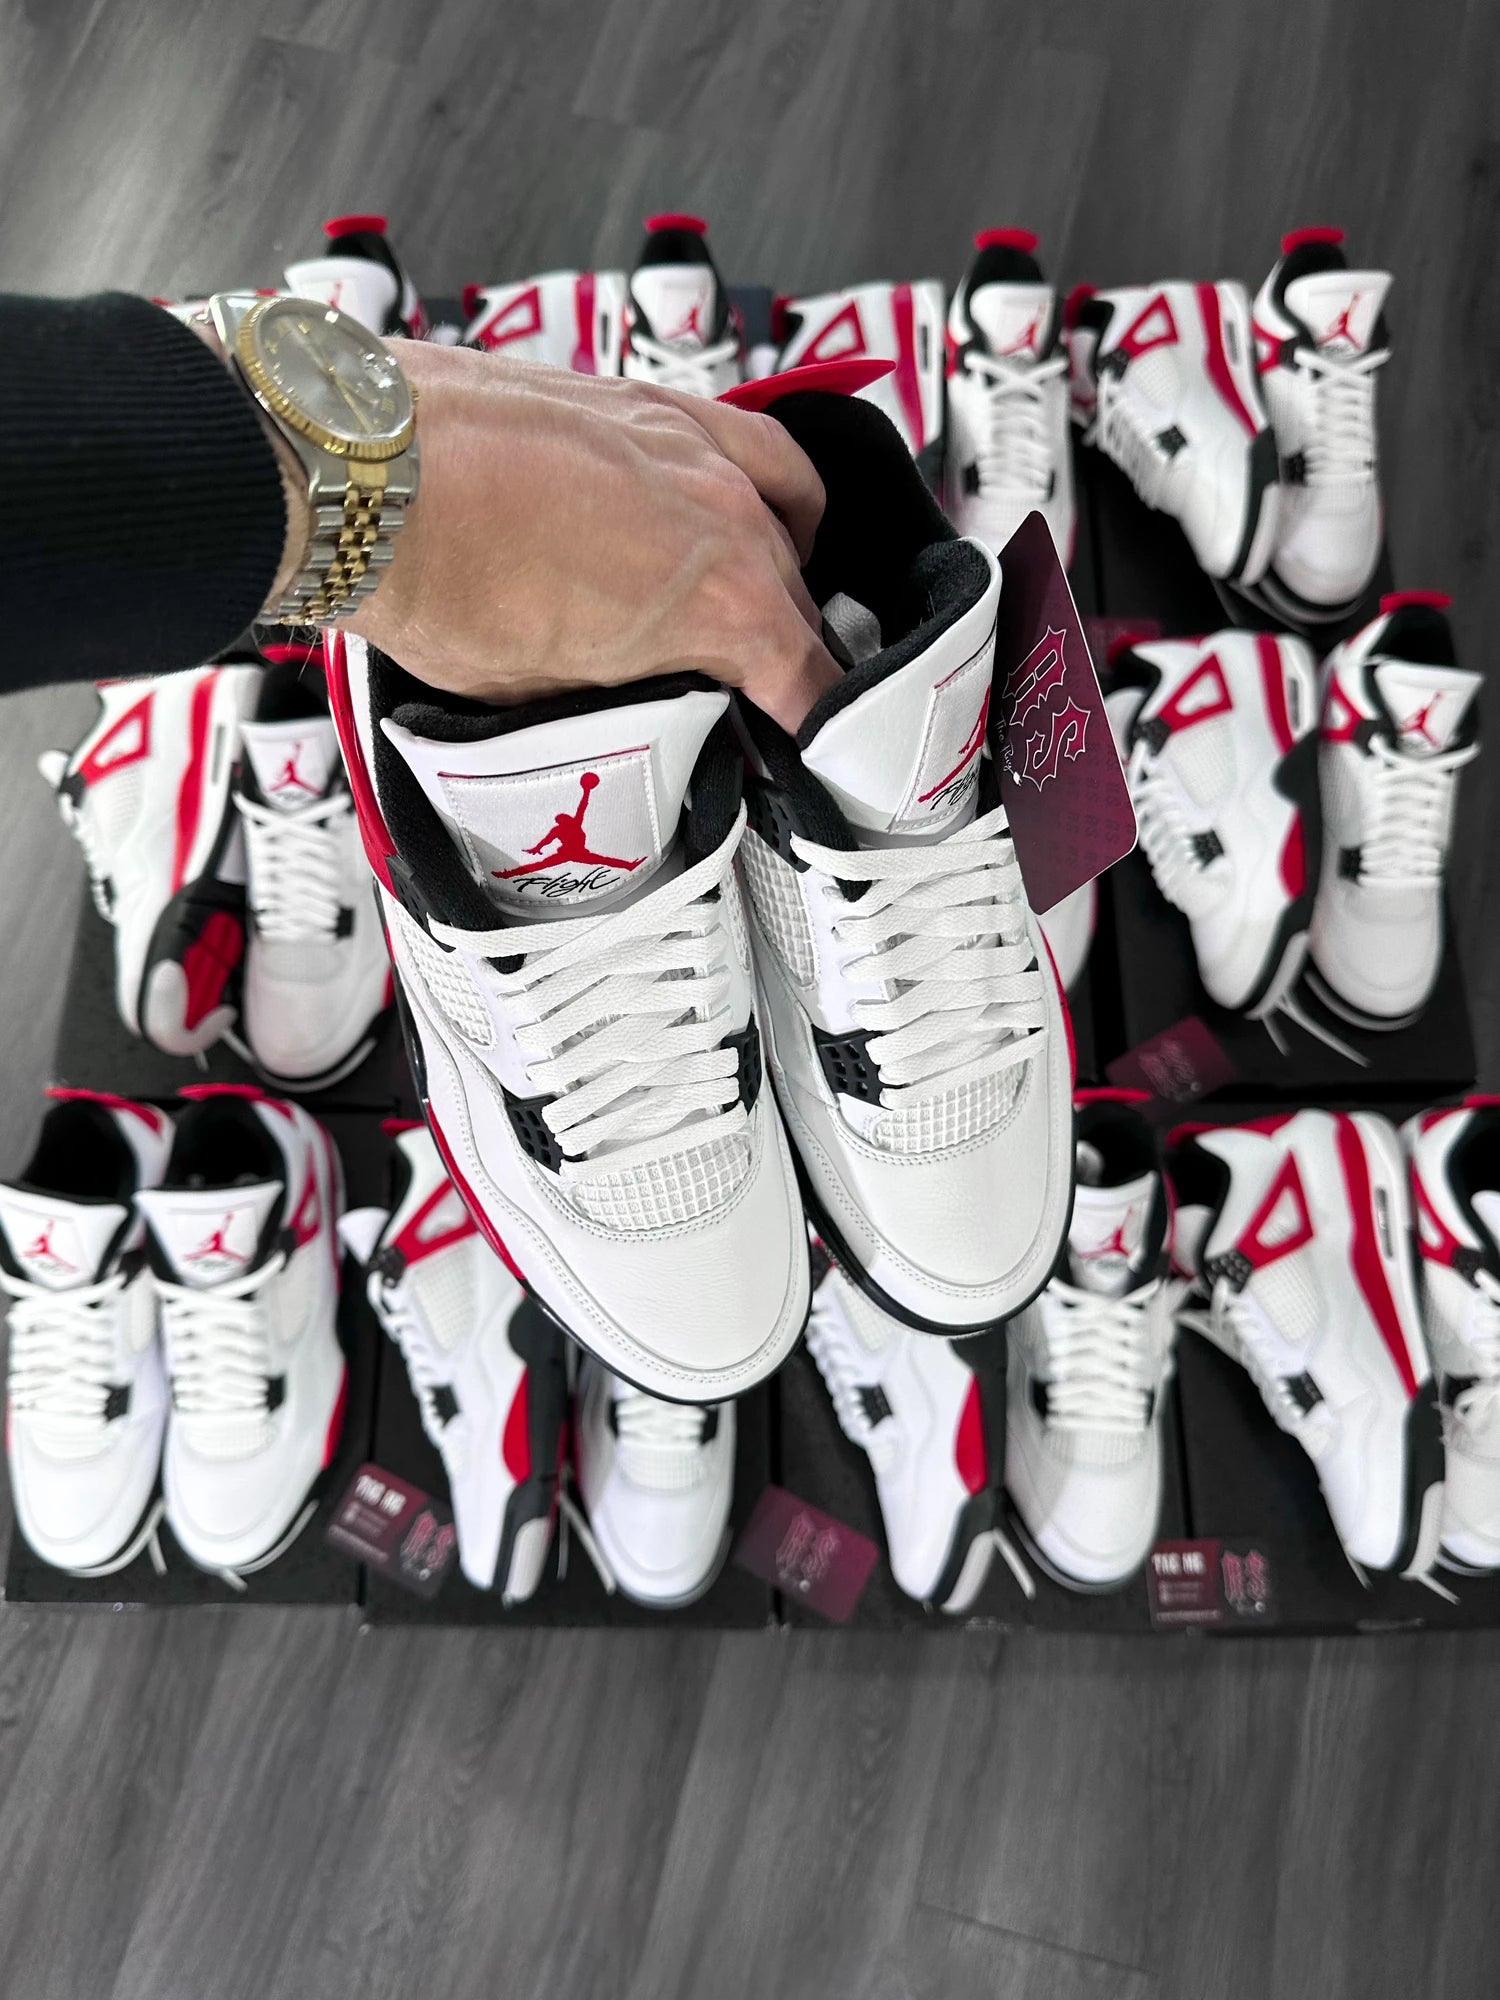 Nike Air Jordan 4 Red Cements